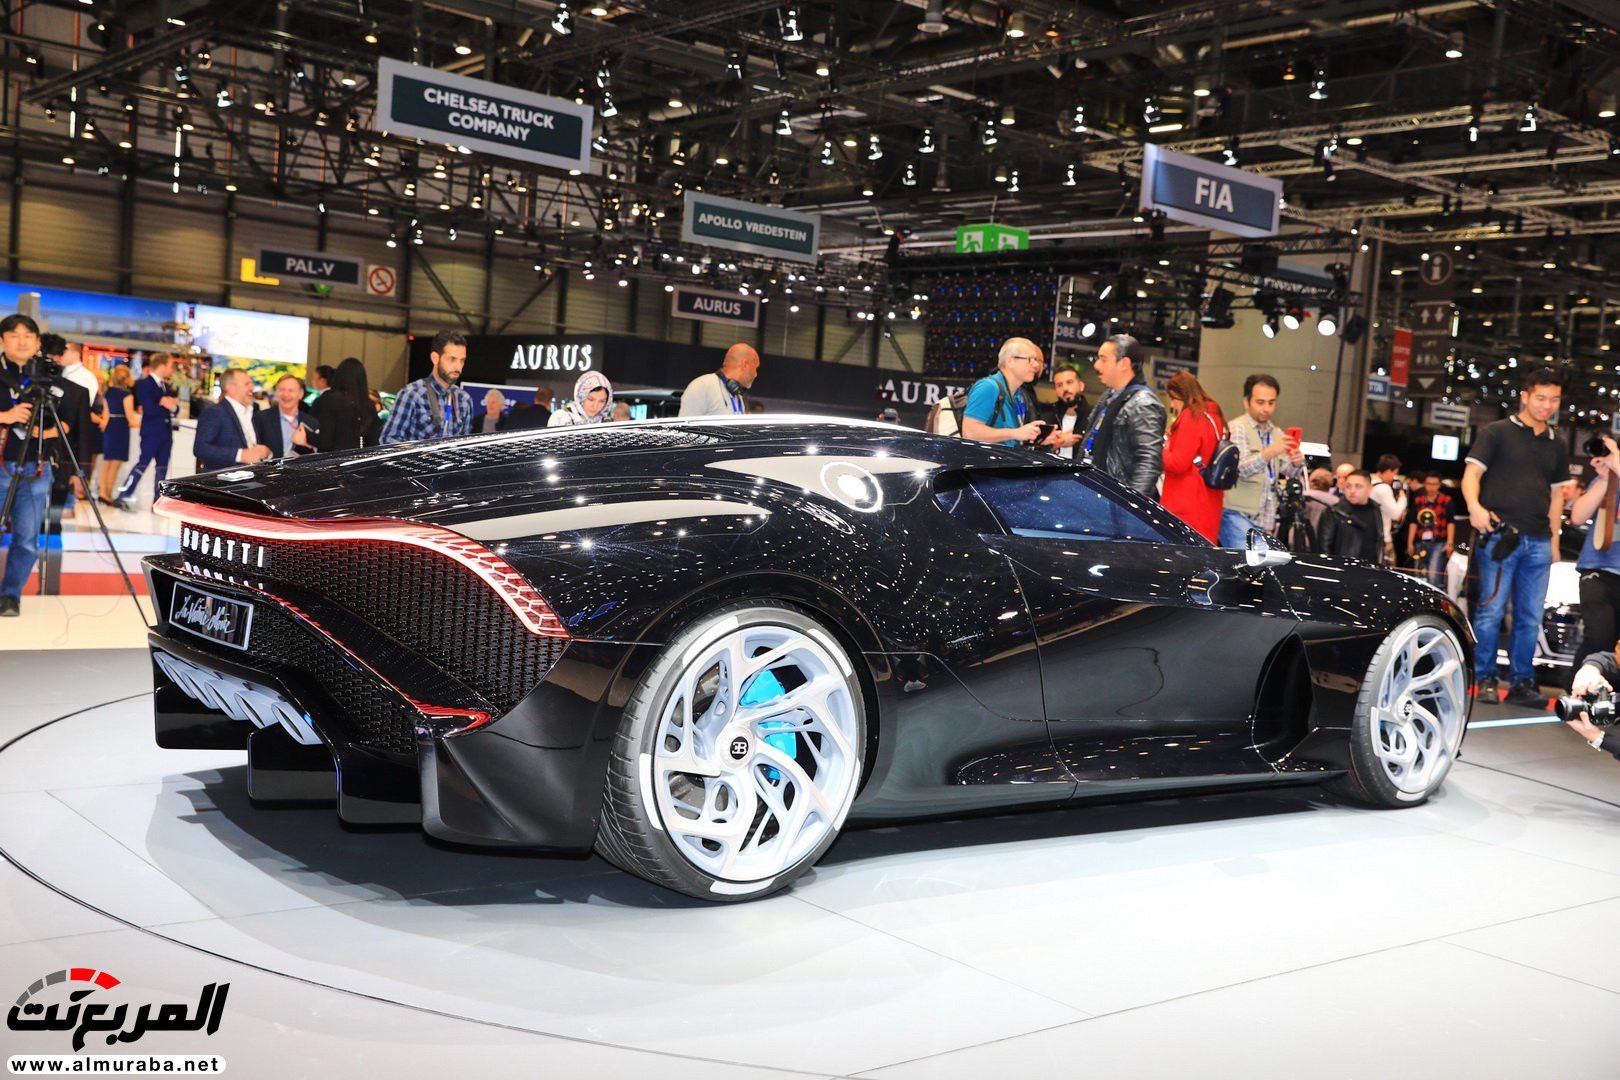 كريستيانو رونالدو قد يكون مالك بوجاتي لافواتيور نوار اغلى سيارة في العالم! 39